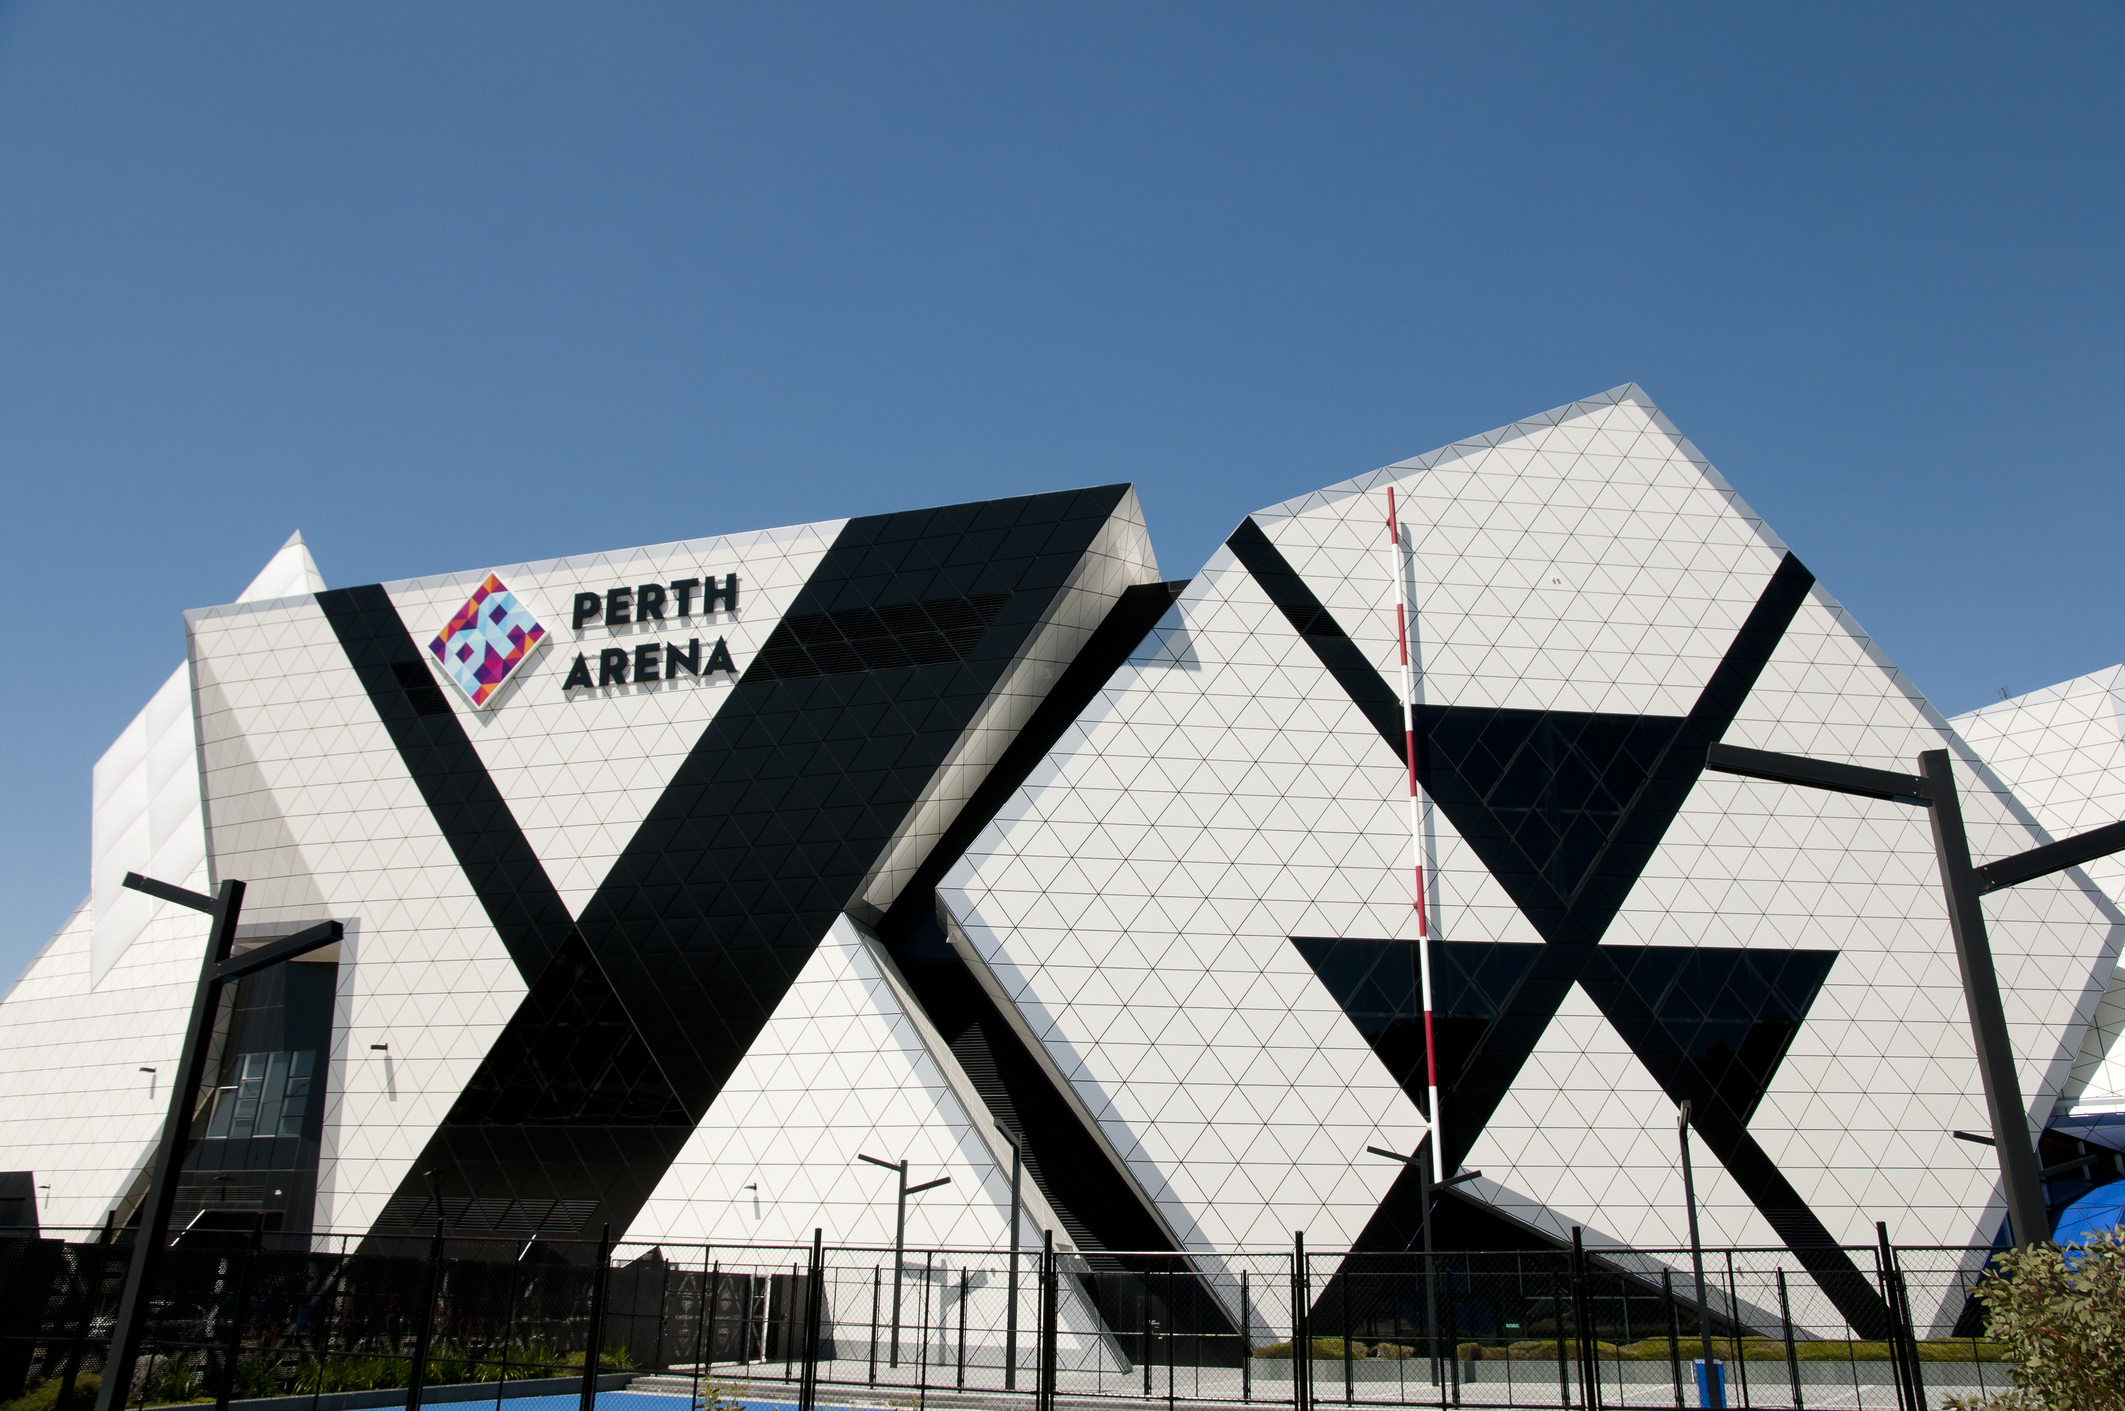 La détection de charges permet un accès plus sûr à la Perth Arena